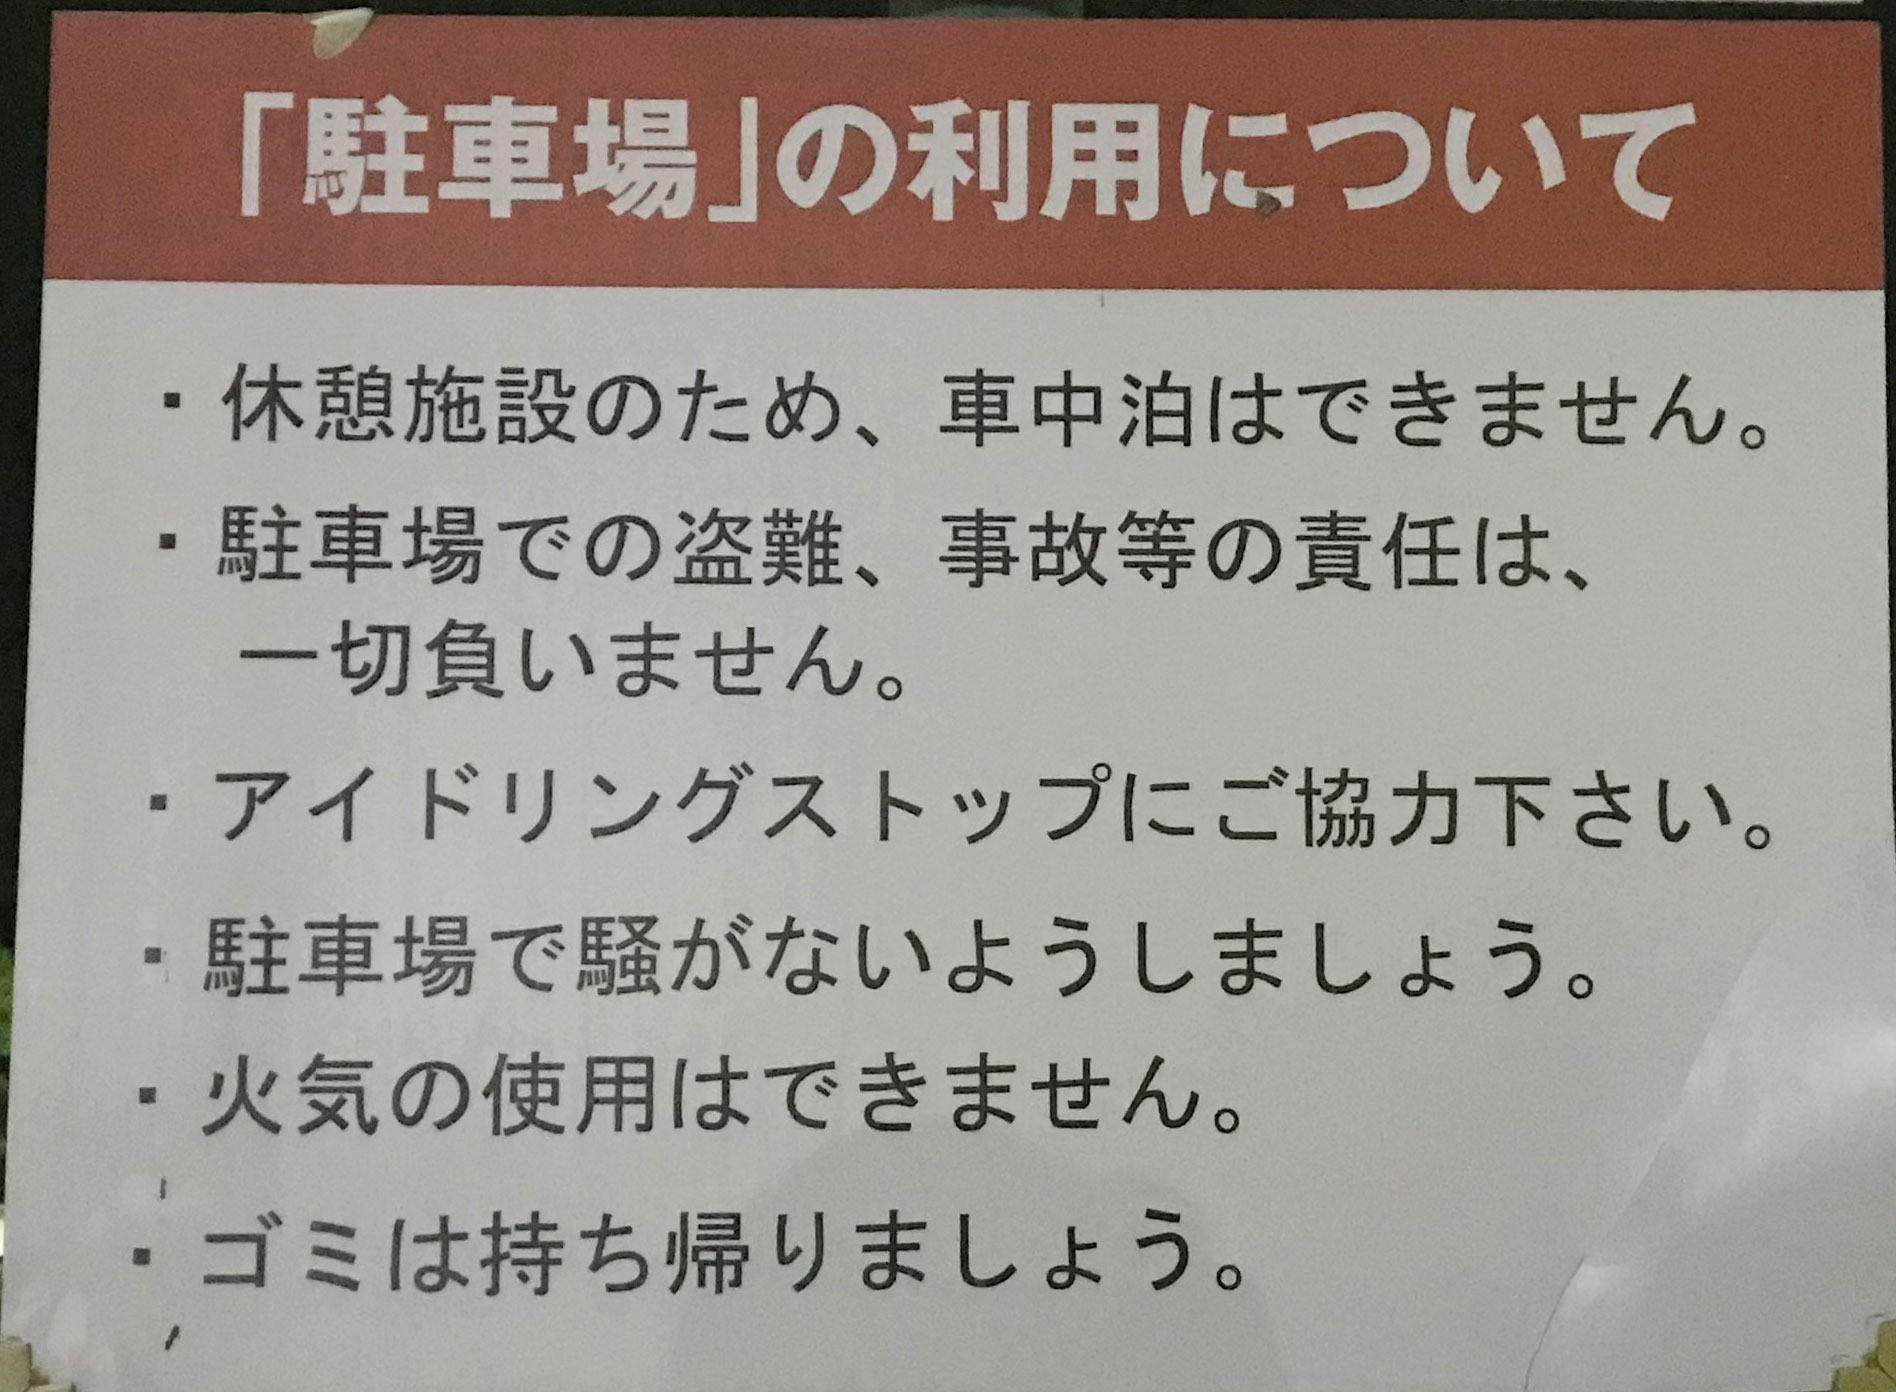 道の駅 神戸フルーツフラワーパーク大沢 車中泊禁止の看板撤去撤回 車中泊